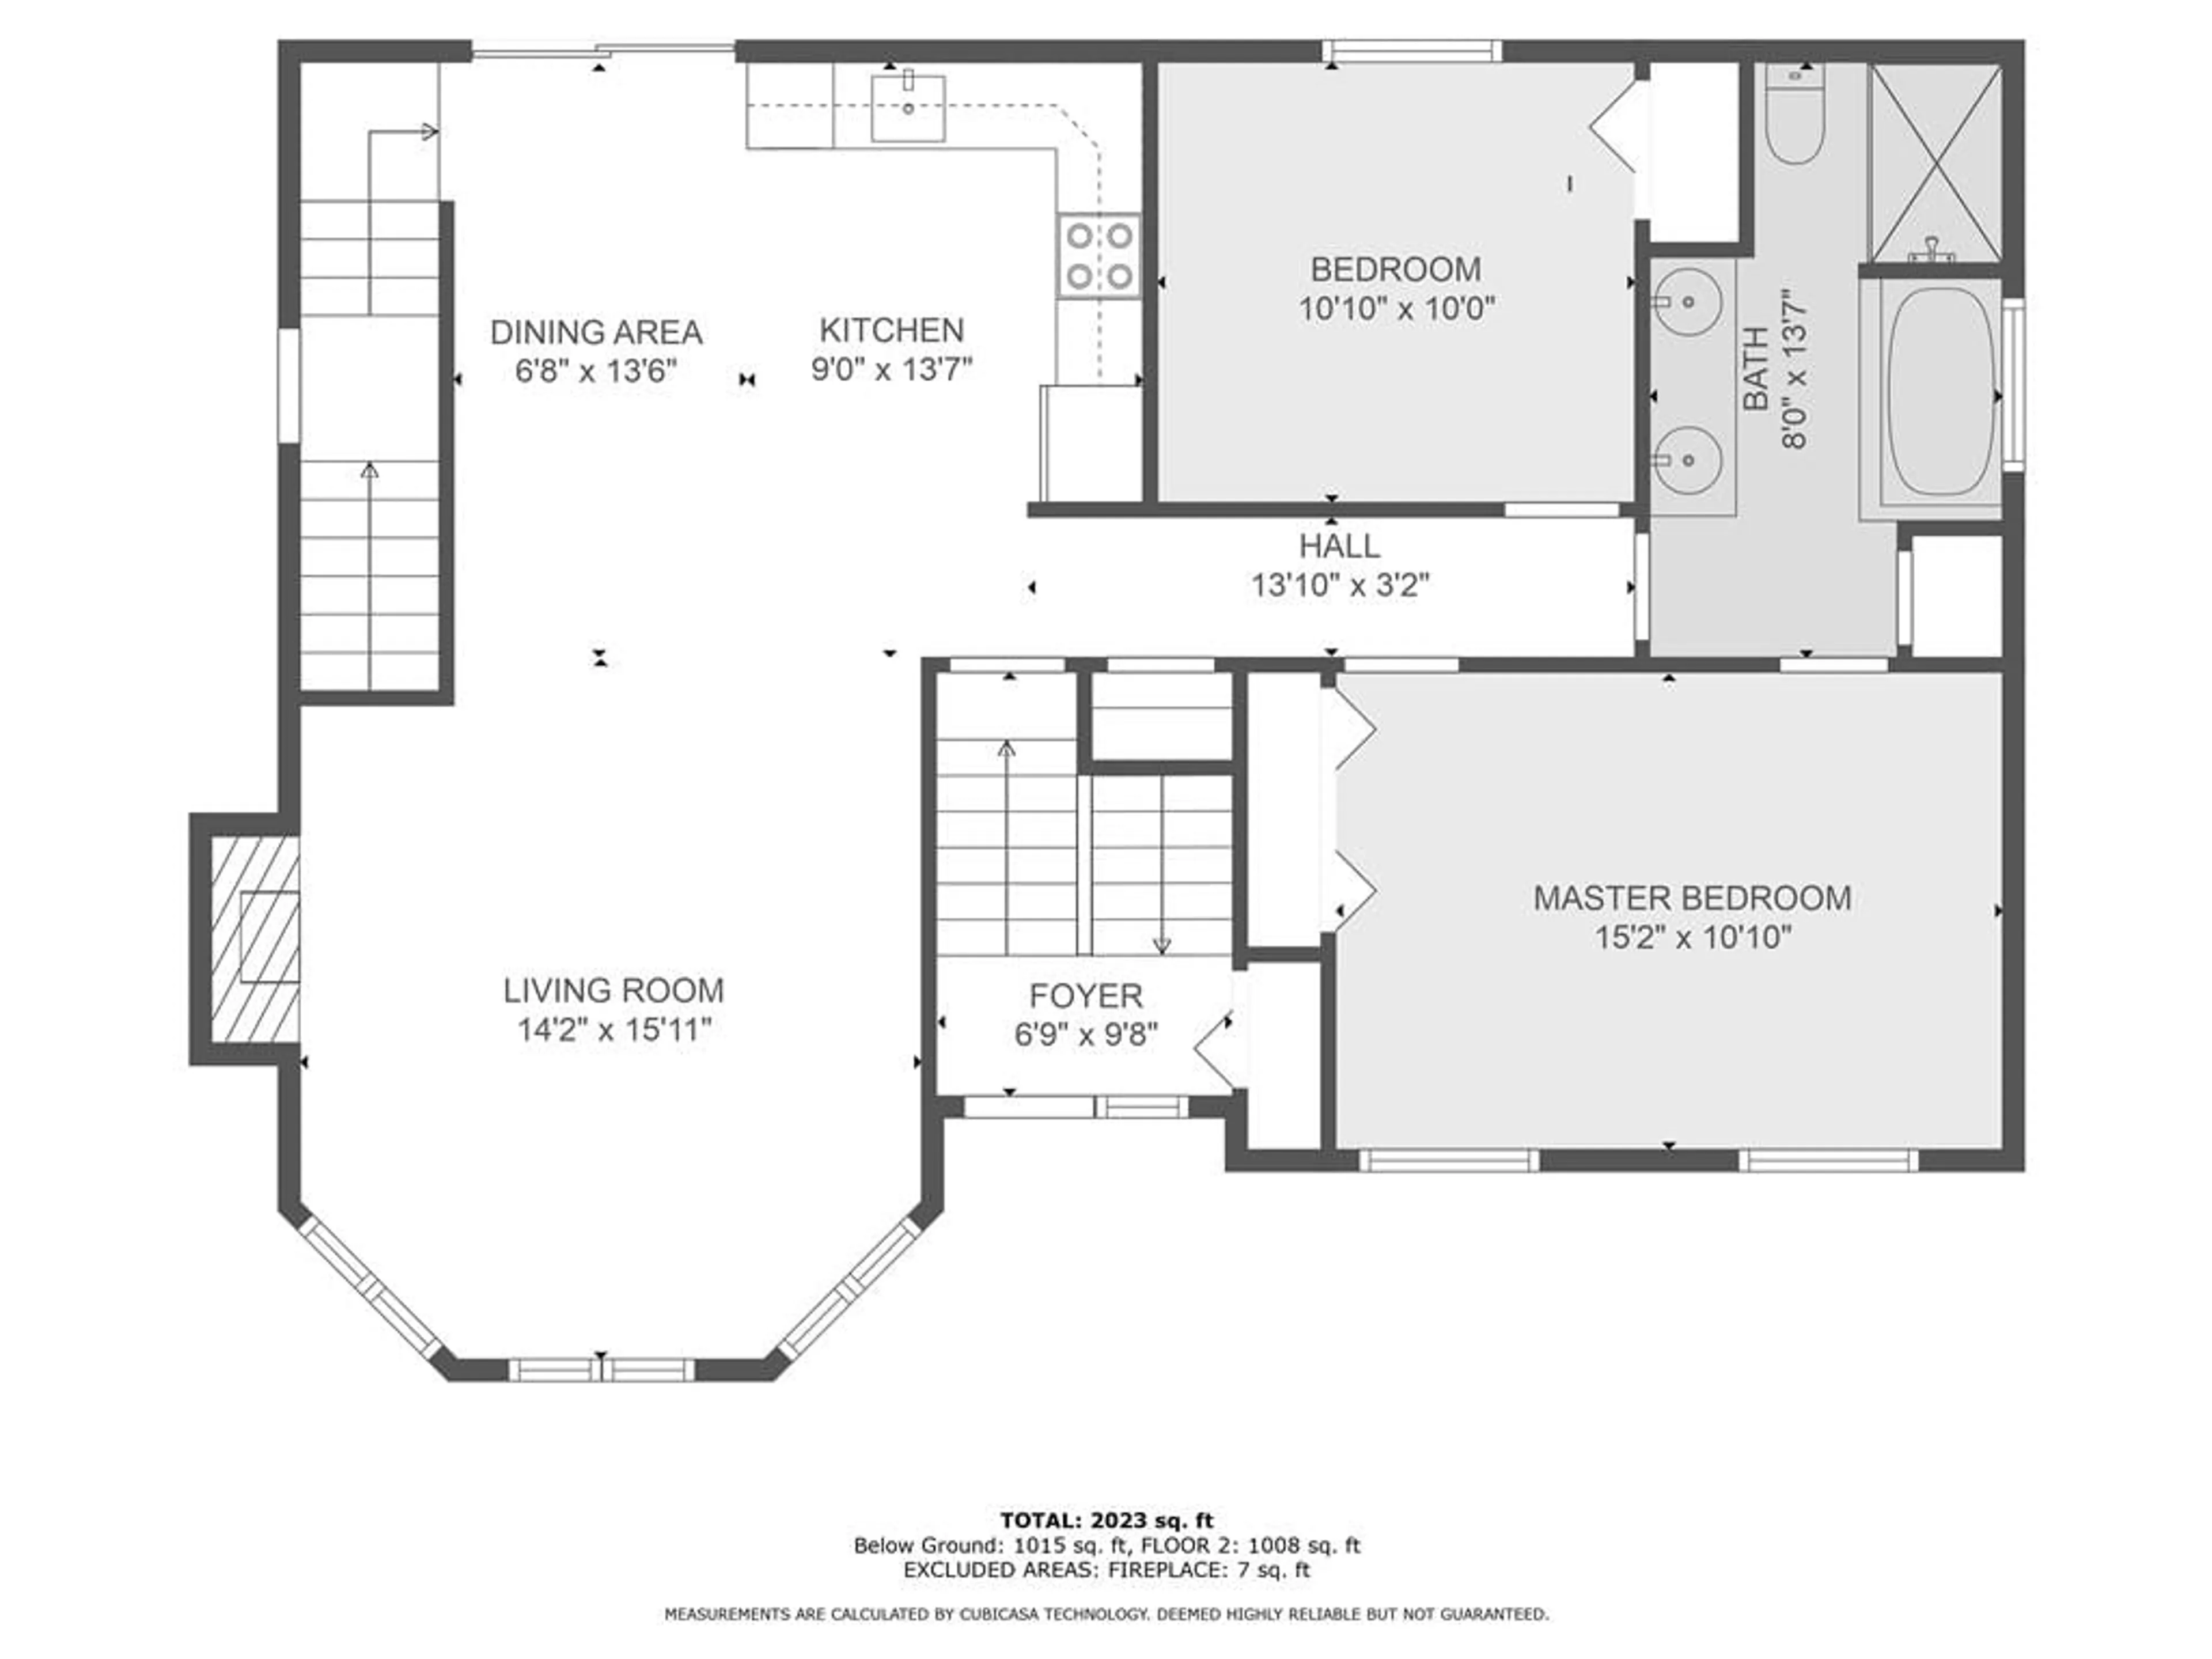 Floor plan for 299 VALERIE ELIZABETH Crt, Cornwall Ontario K6H 7N5